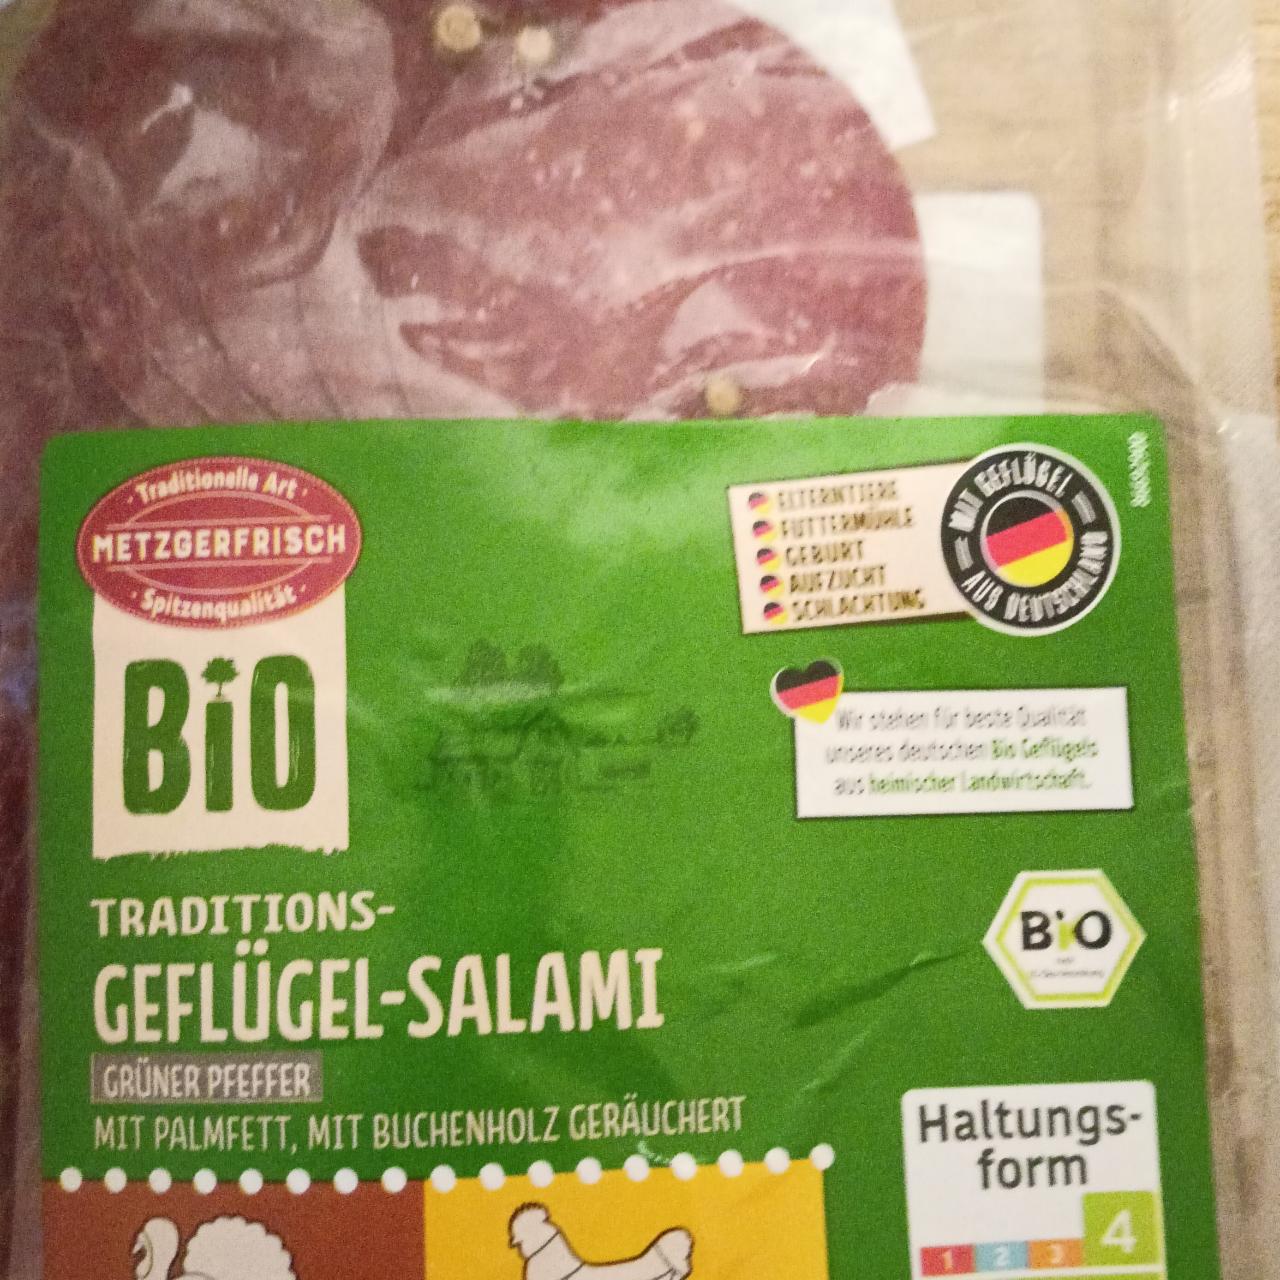 Fotografie - geflügel-salami bio Gruner pfeffer Metzgerfrisch